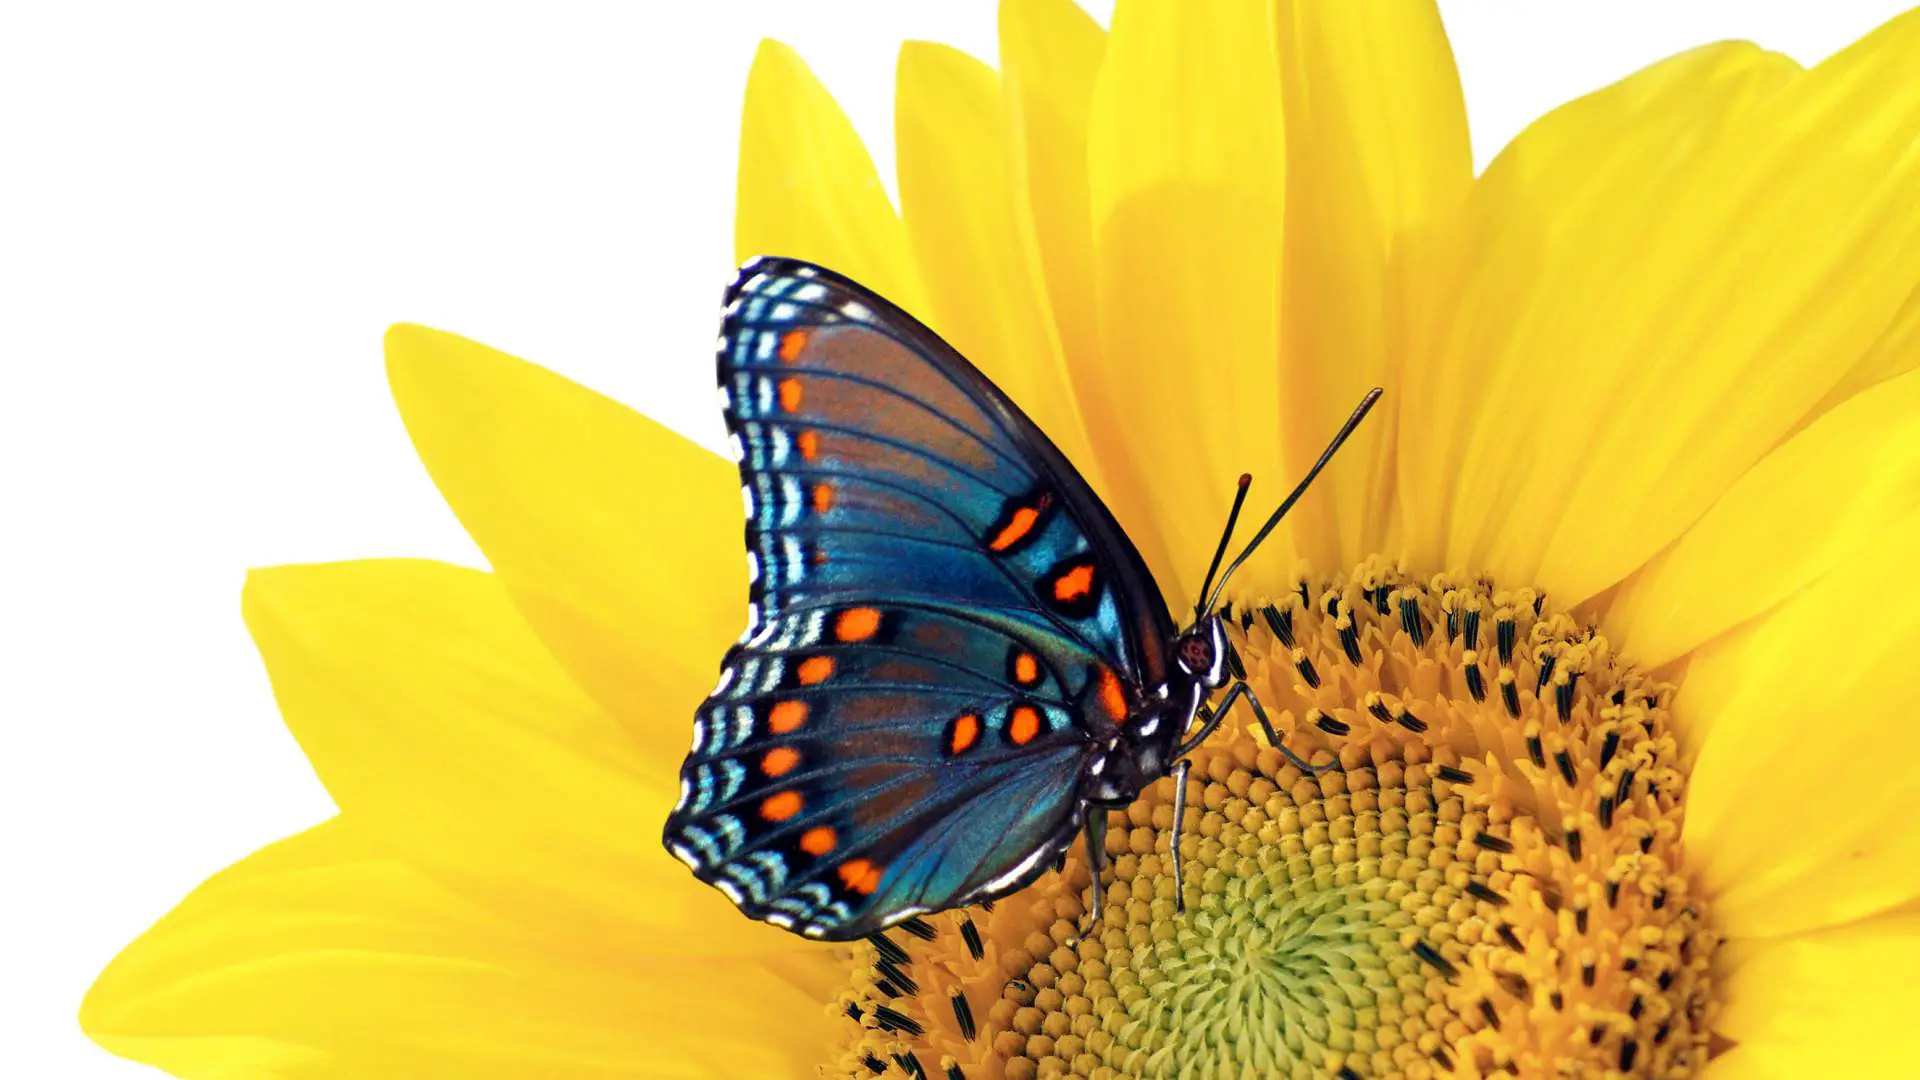 Plano de fundo da área de trabalho com uma borboleta colorida em uma flor amarela